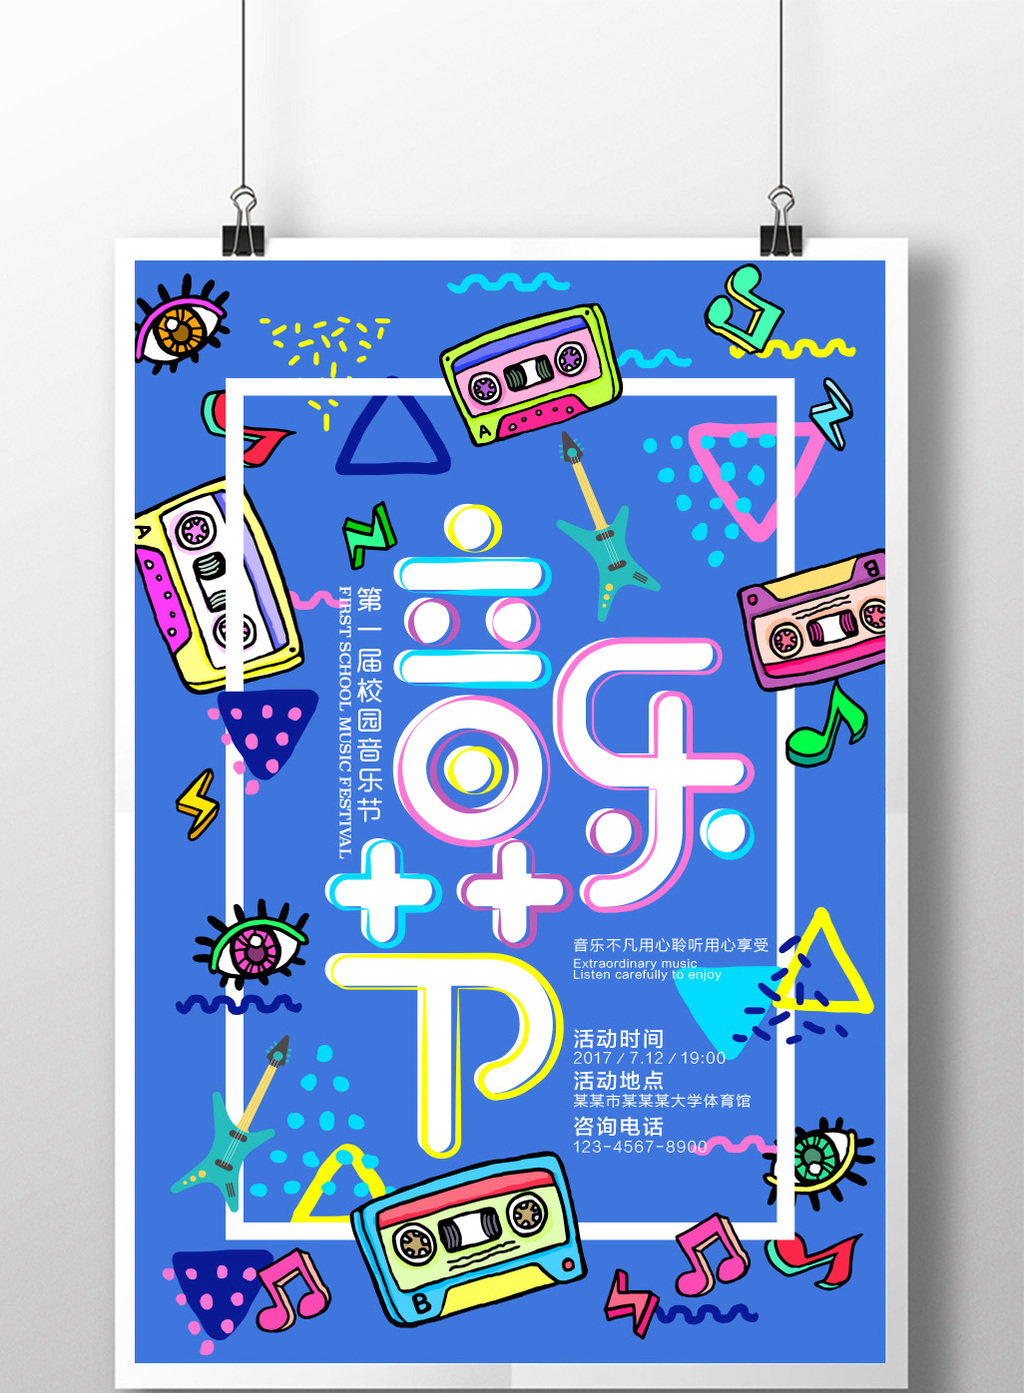 包图 广告设计 海报 【ai】 波谱风校园音乐节歌唱比赛大学生音乐节